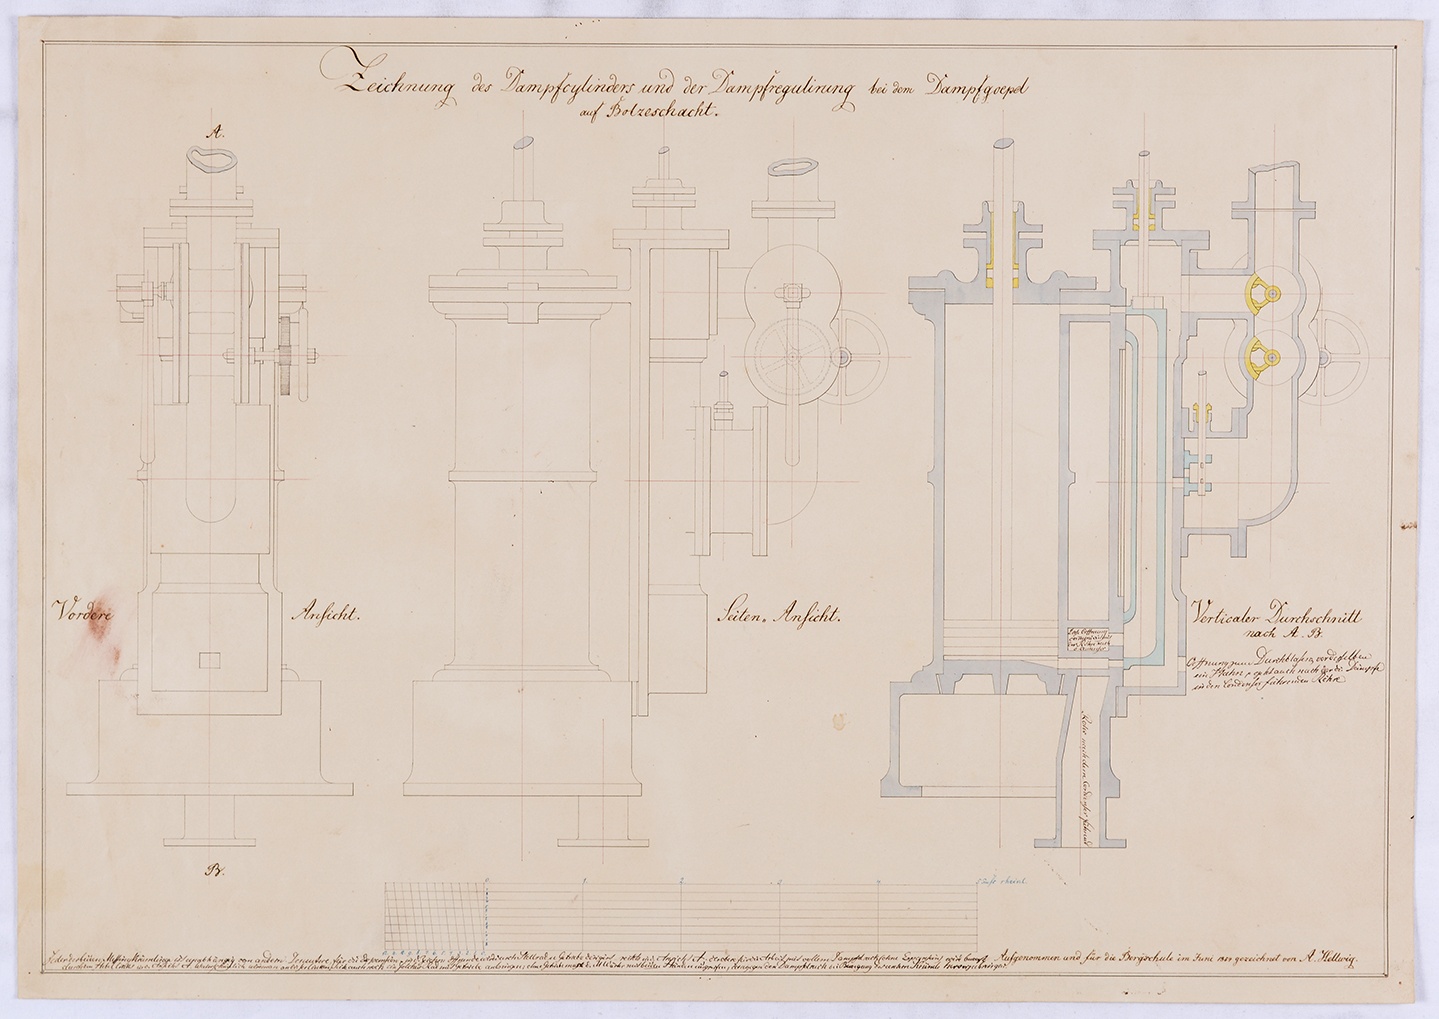 Zeichnung des Dampfcylinders und der Dampfregulierung bei dem Dampfgoepel auf Bolzeschacht. (Mansfeld-Museum im Humboldt-Schloss CC BY-NC-SA)